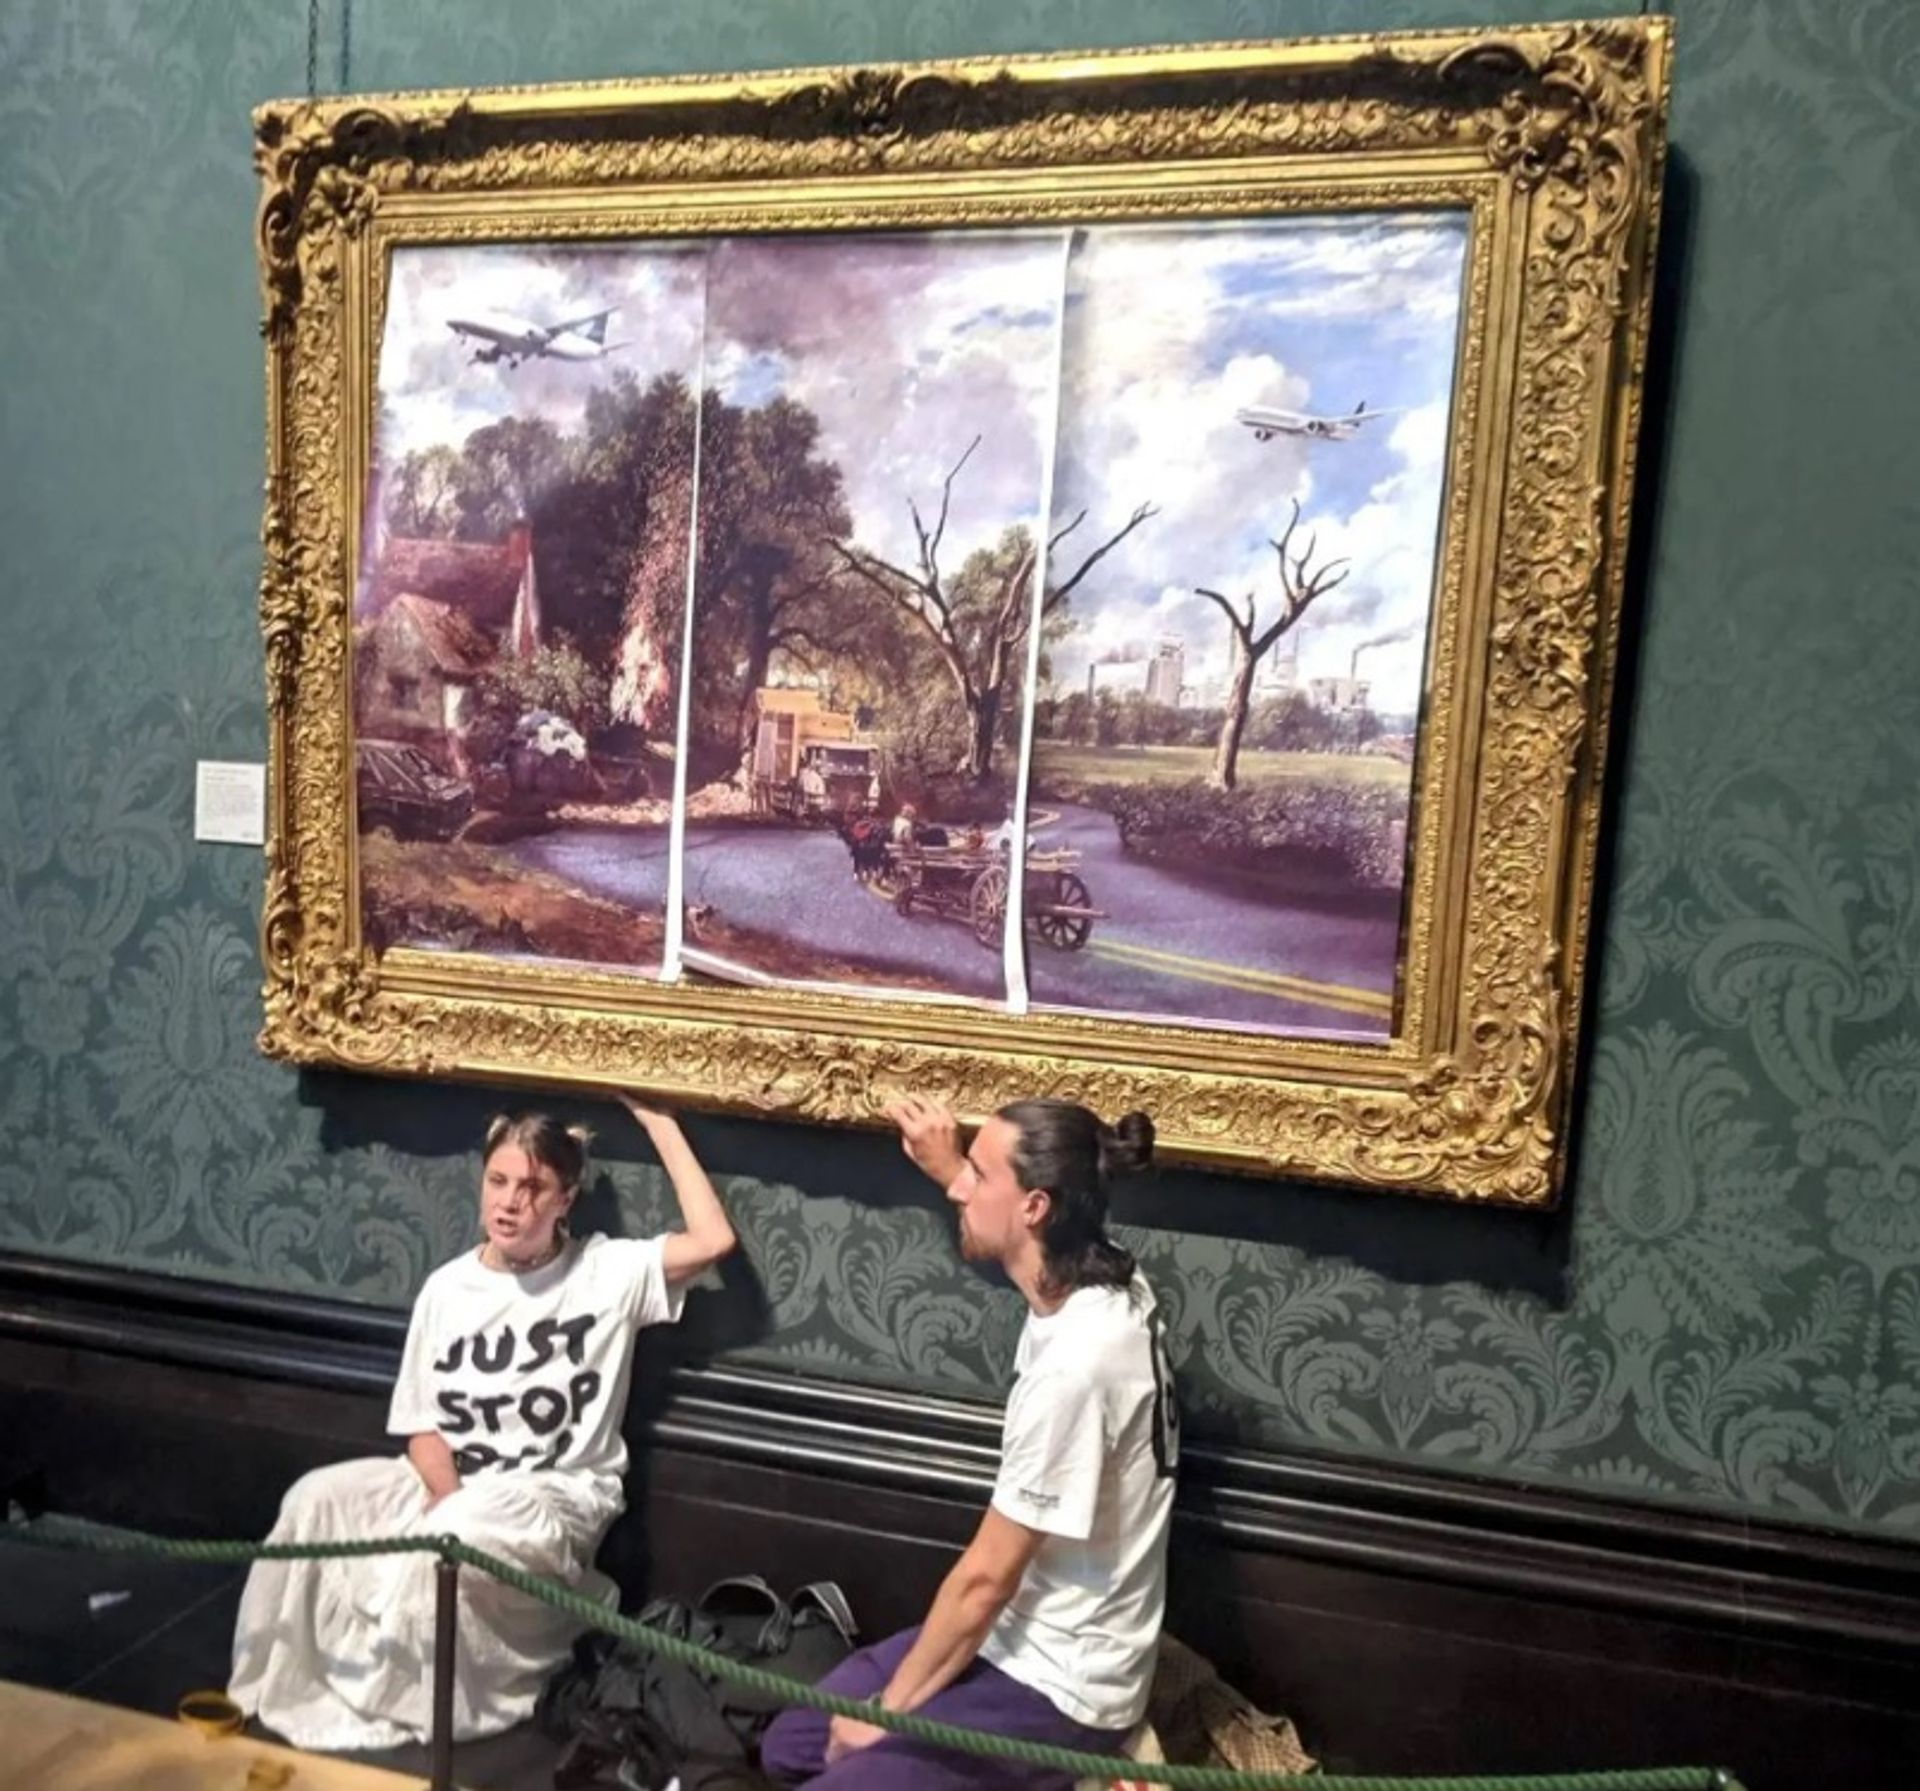 האנה האנט ואיבן לזרוס, שני פעילים צעירים מברייטון, הדביקו את עצמם לציור של קונסטבל כחלק מהמחאה למען איכות הסביבה, Just Stop Oil